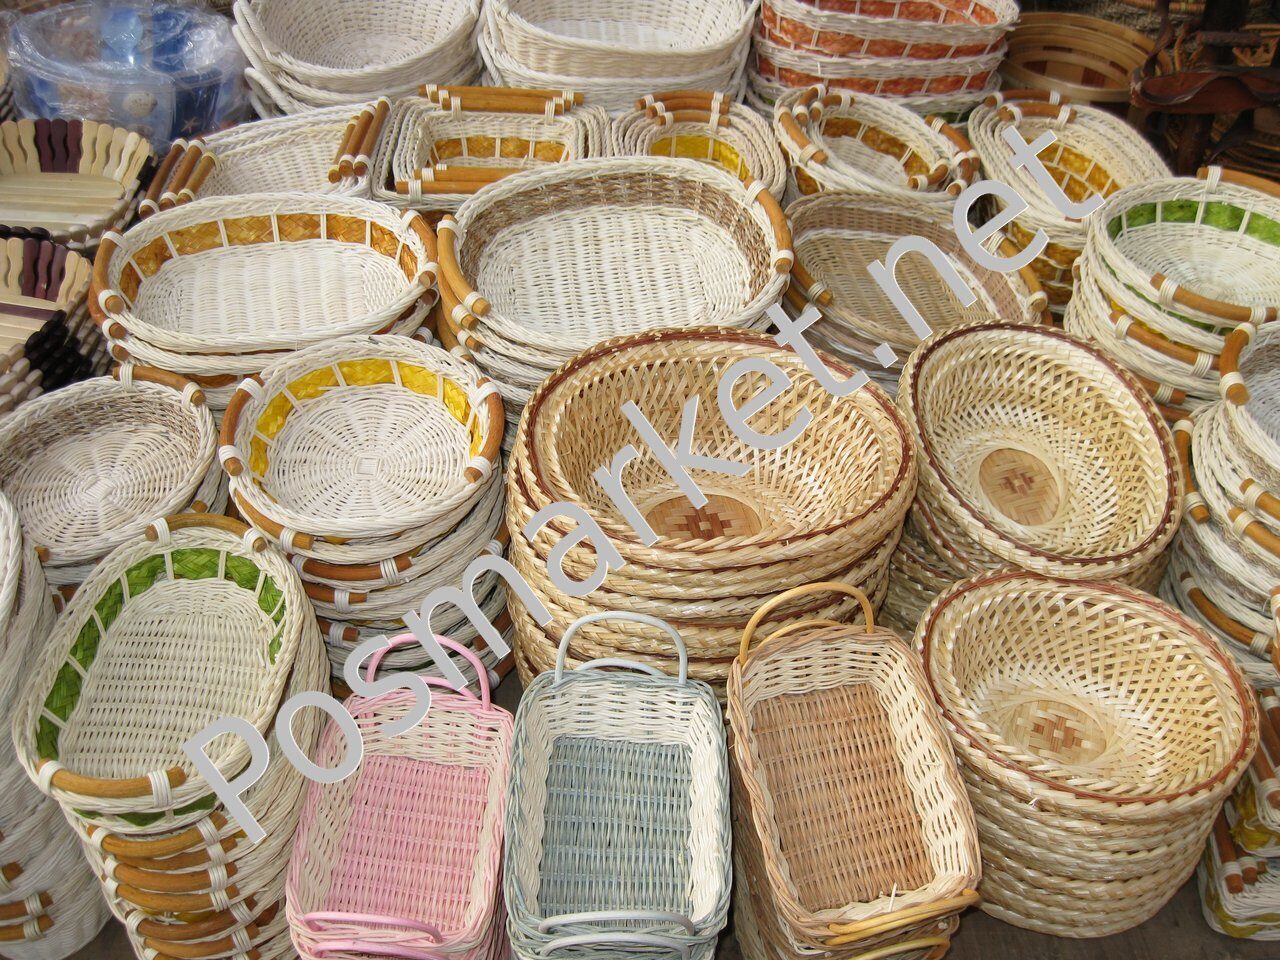 Купить ротанг для плетения в москве. Плетеные корзины для выкладки товара. Посуда из ротанга. Выкладка плетеных корзин в магазине. Утварь для кухни из ротанга.